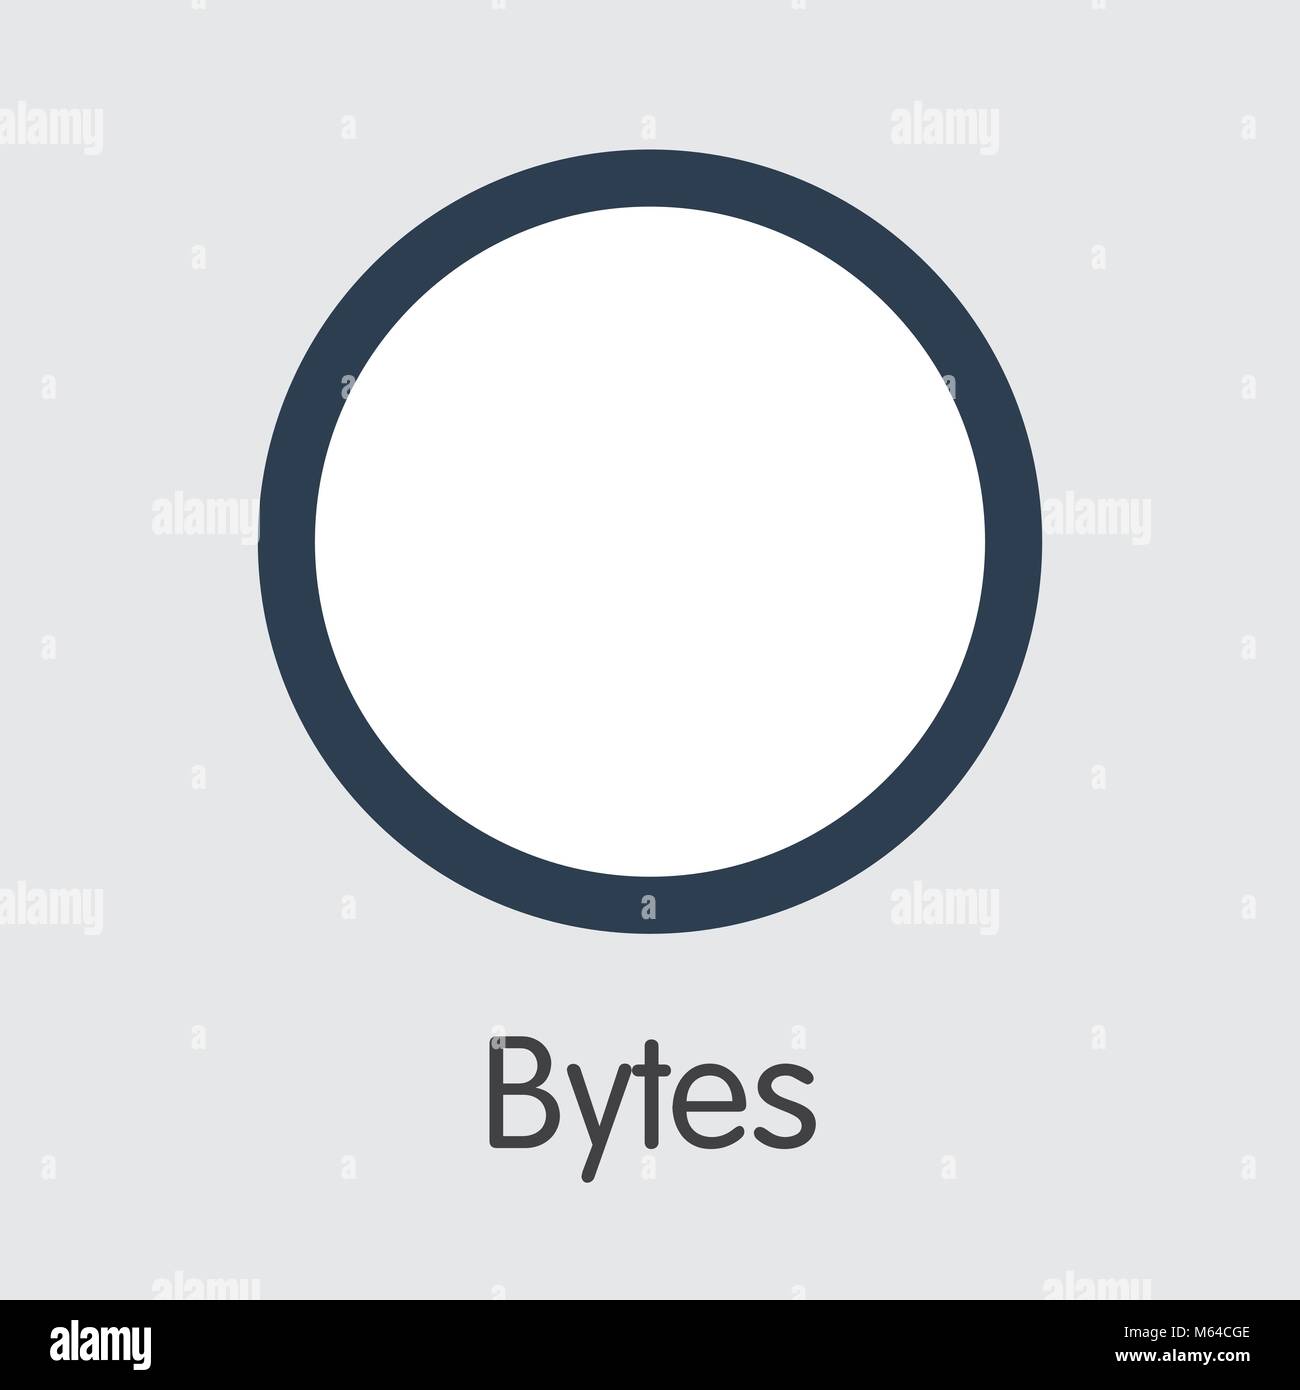 Byte - Blockchain Cryptocurrency simbolo grafico. Illustrazione Vettoriale